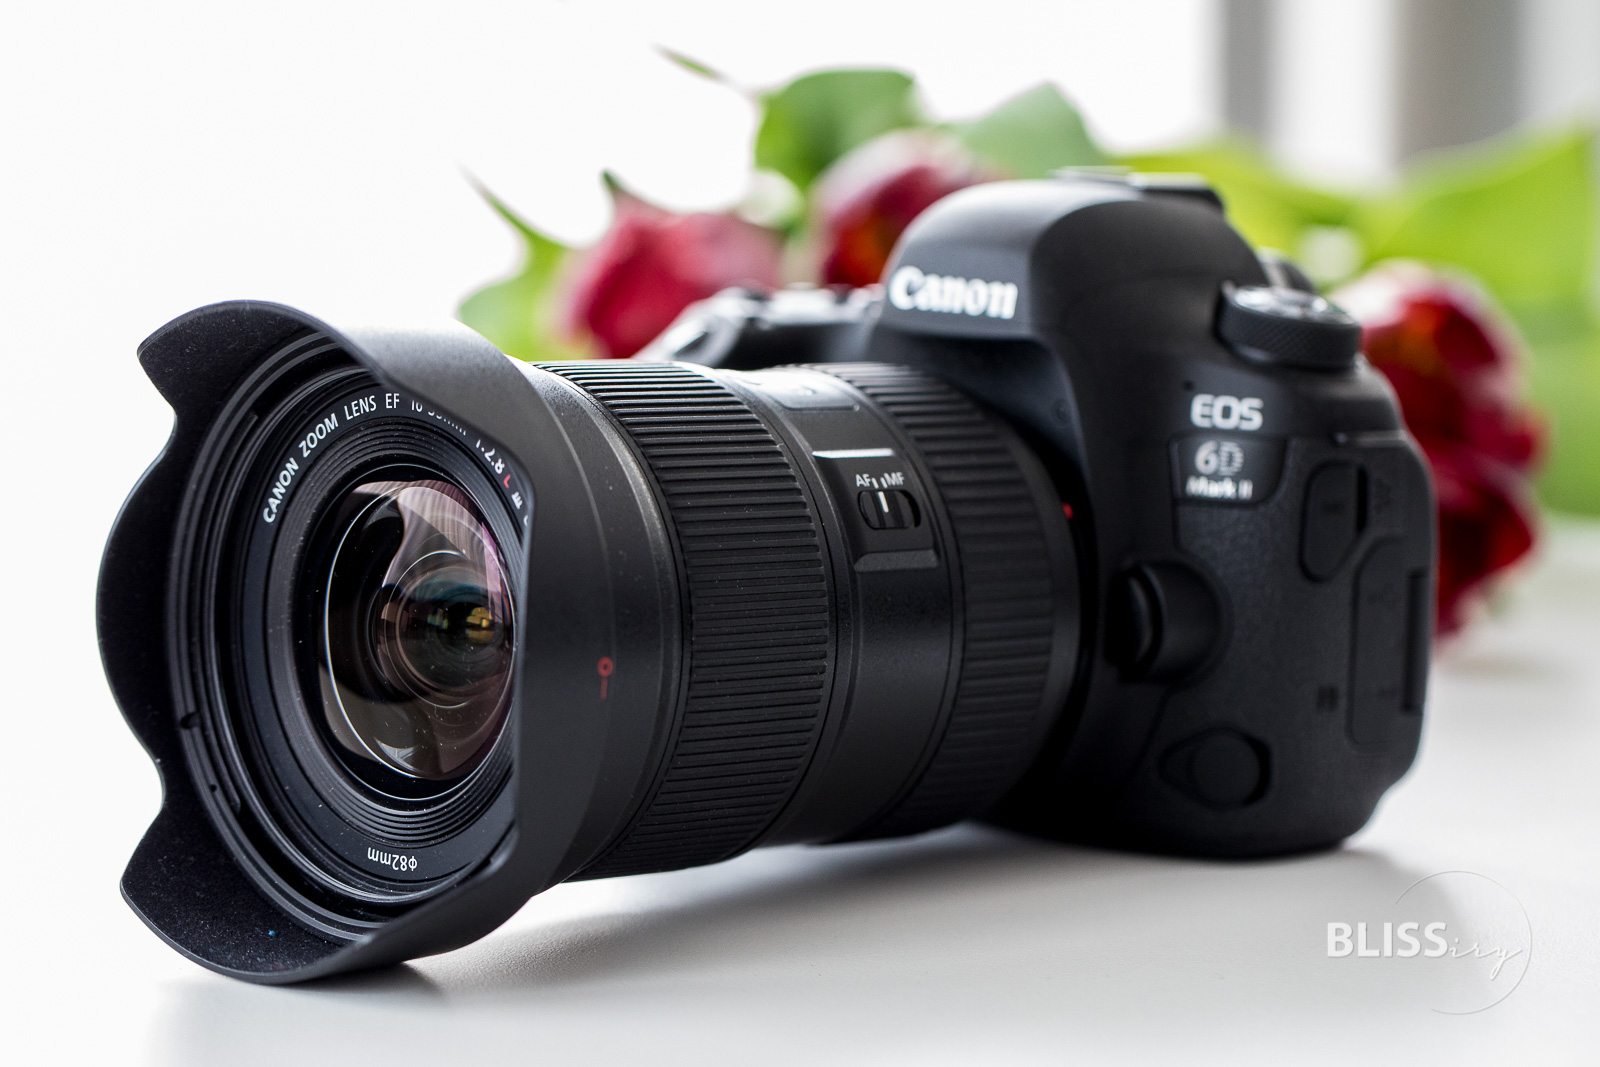 Canon EF 16-35 f/2.8 L III USM Objektiv im Test für Video und Foto - Fotoblog und Videoblogger - VanessaPur